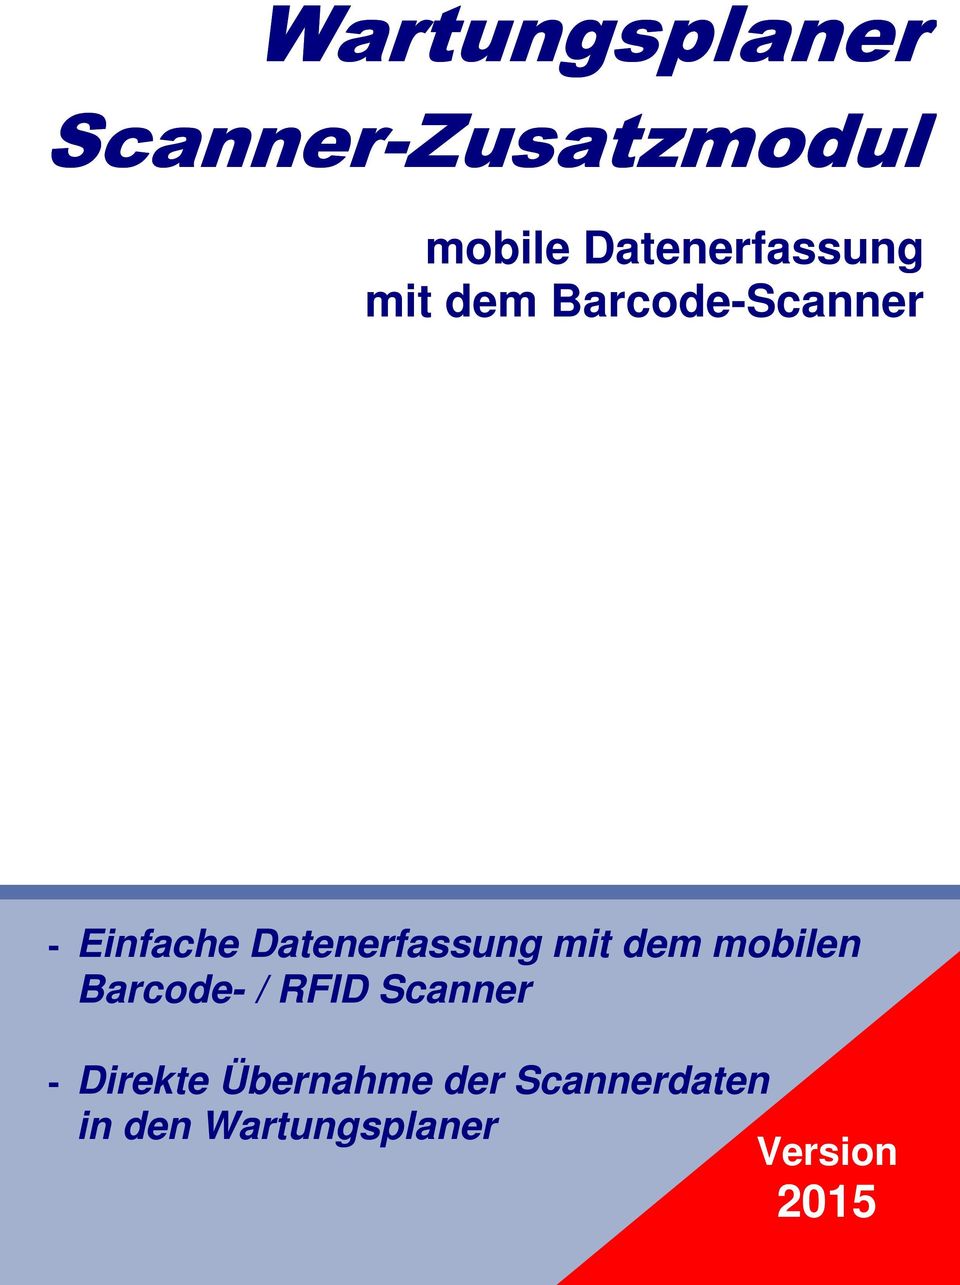 Datenerfassung mit dem mobilen Barcode- / RFID Scanner